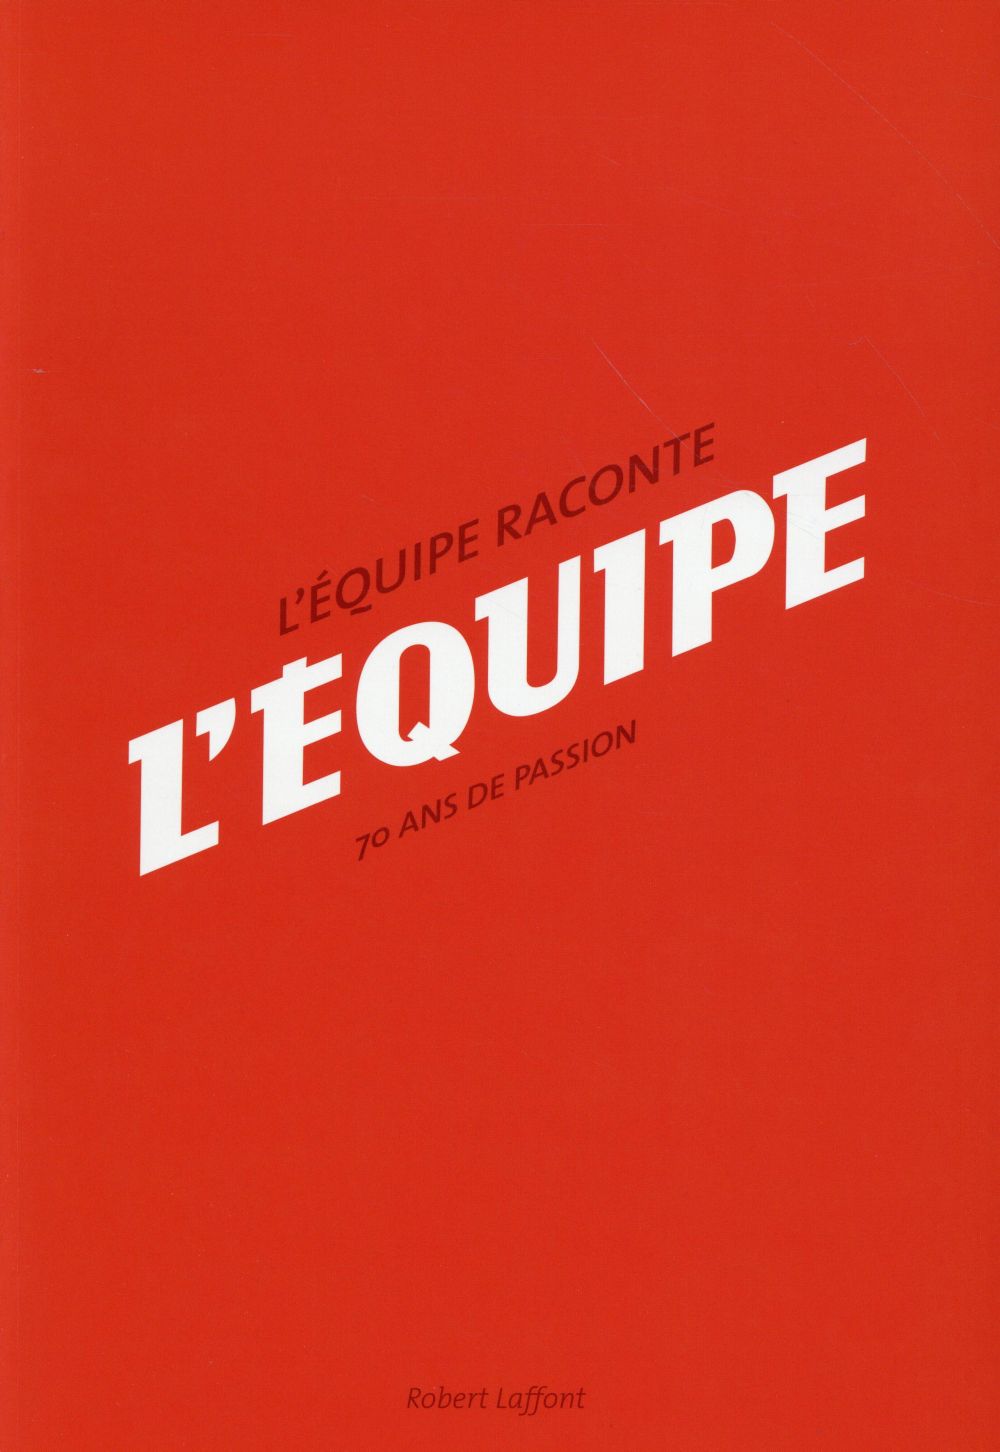 L'EQUIPE RACONTE L'EQUIPE - 70 ANS DE PASSION